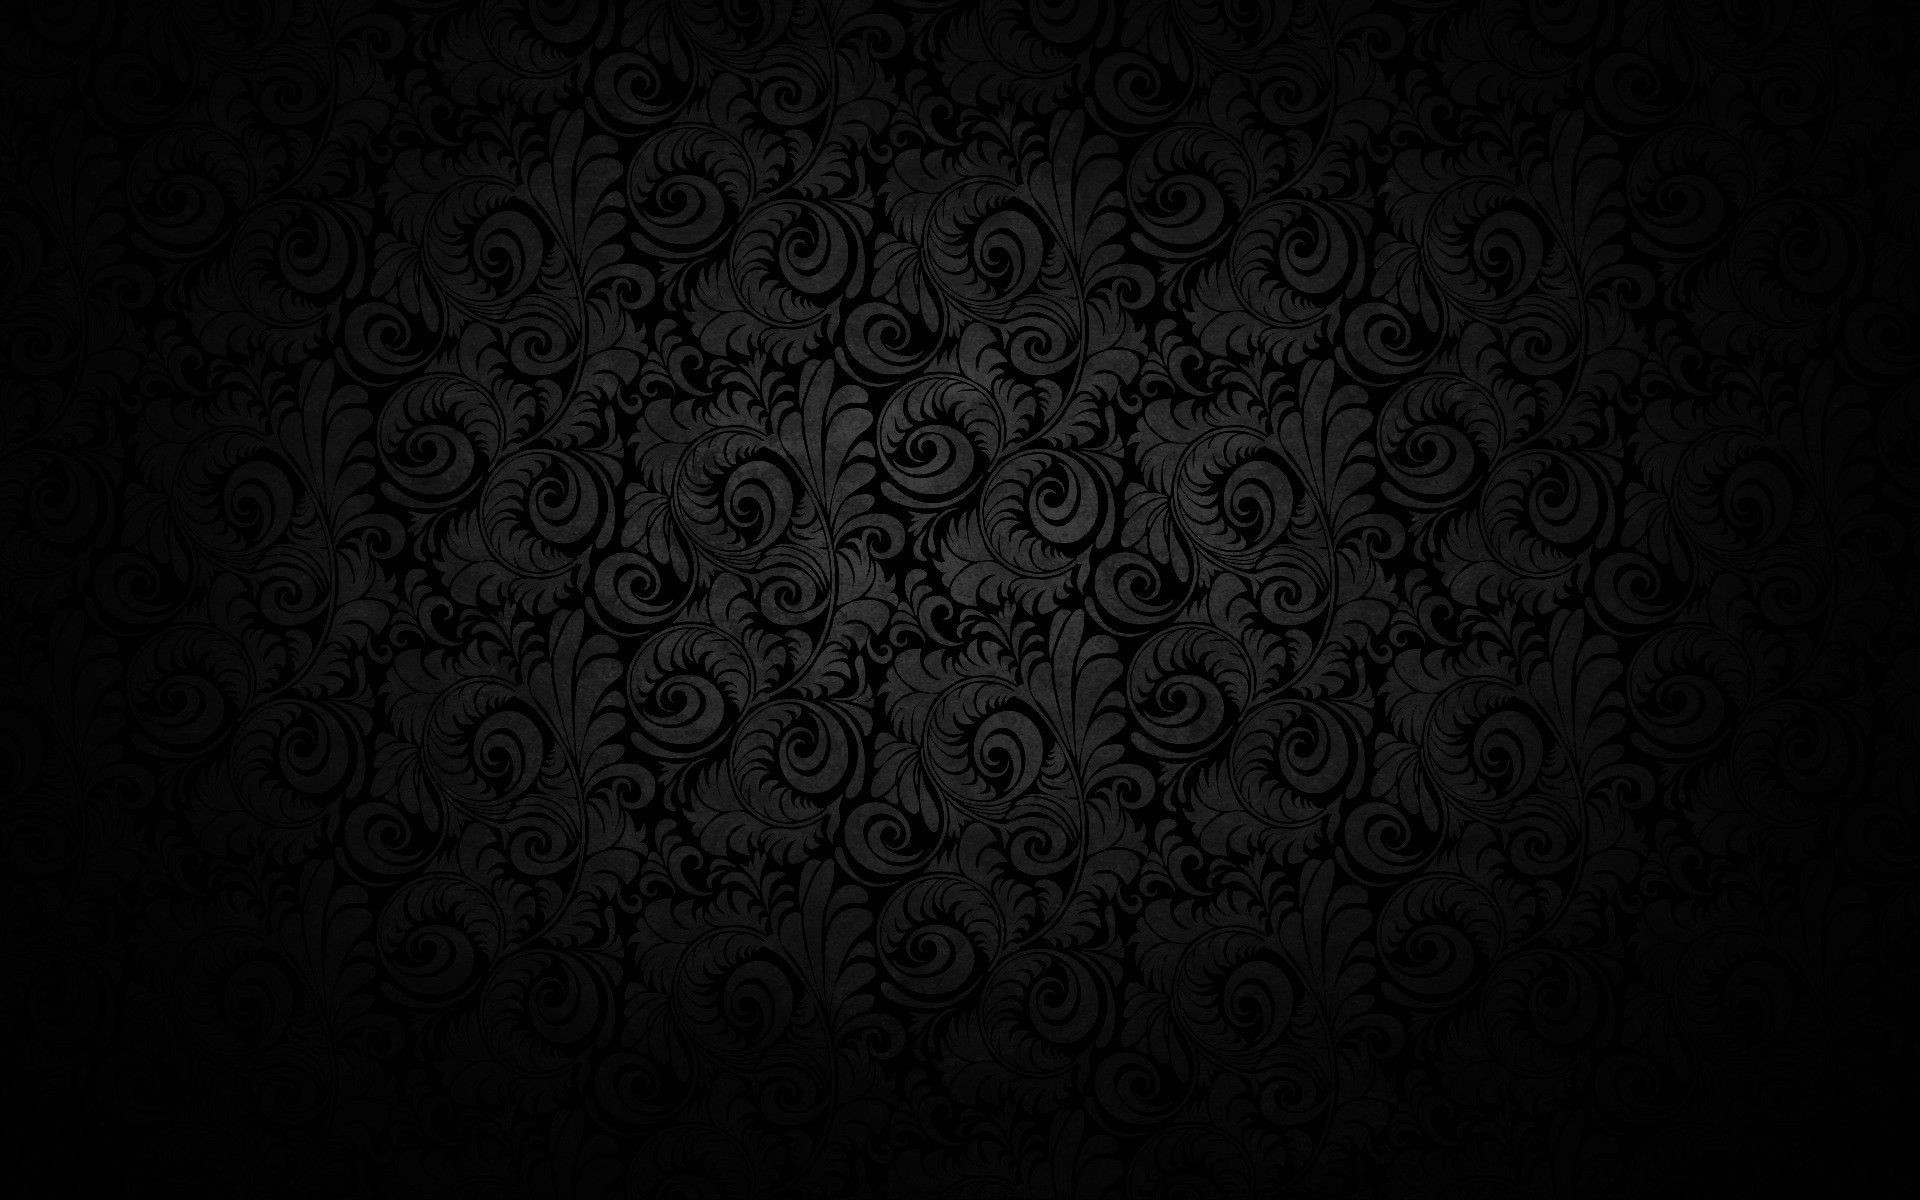 1920x1200 HD desktop background dark - Black Background Wallpaper for Desktop  Background Dark | 1920 X 1200 Download HD desktop background dark wallpaper  from the ...